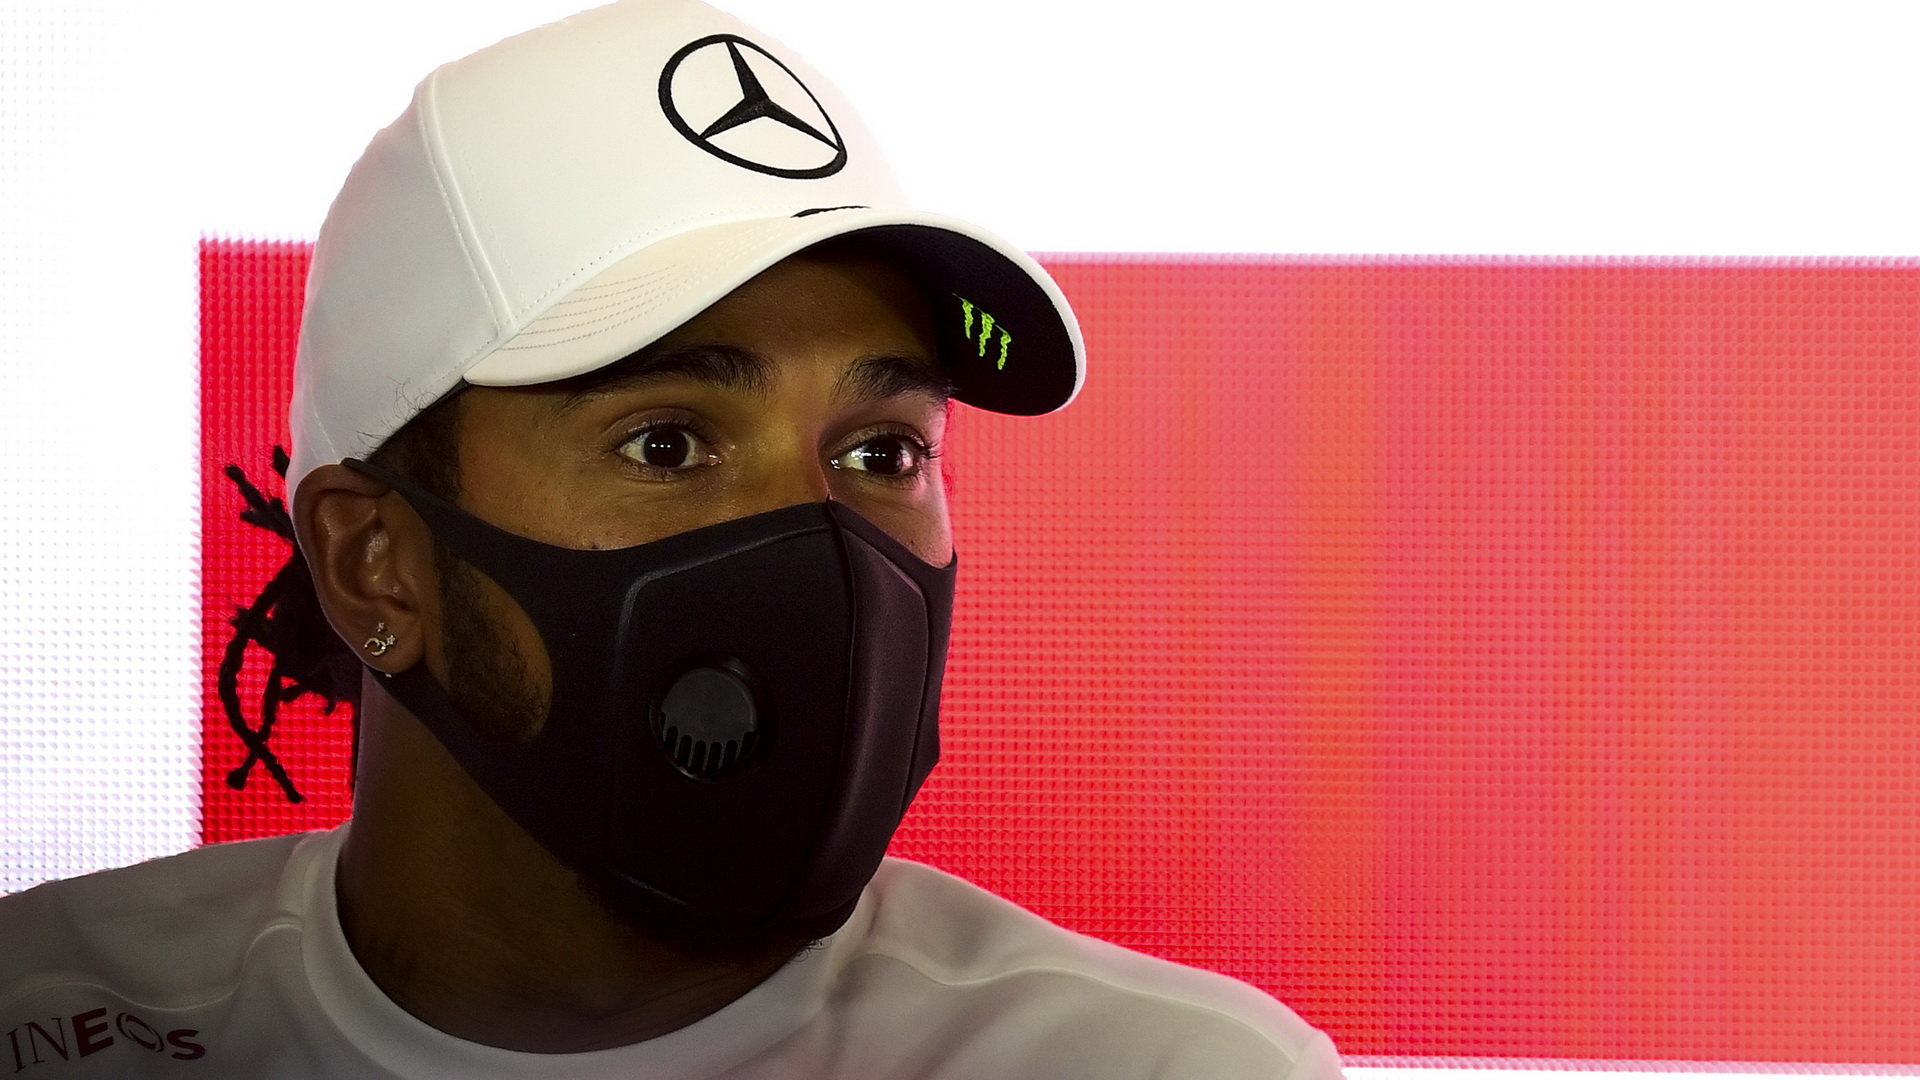 Lewis Hamilton smlouvu na příští rok stále nepodepsal, bude pokračovat?